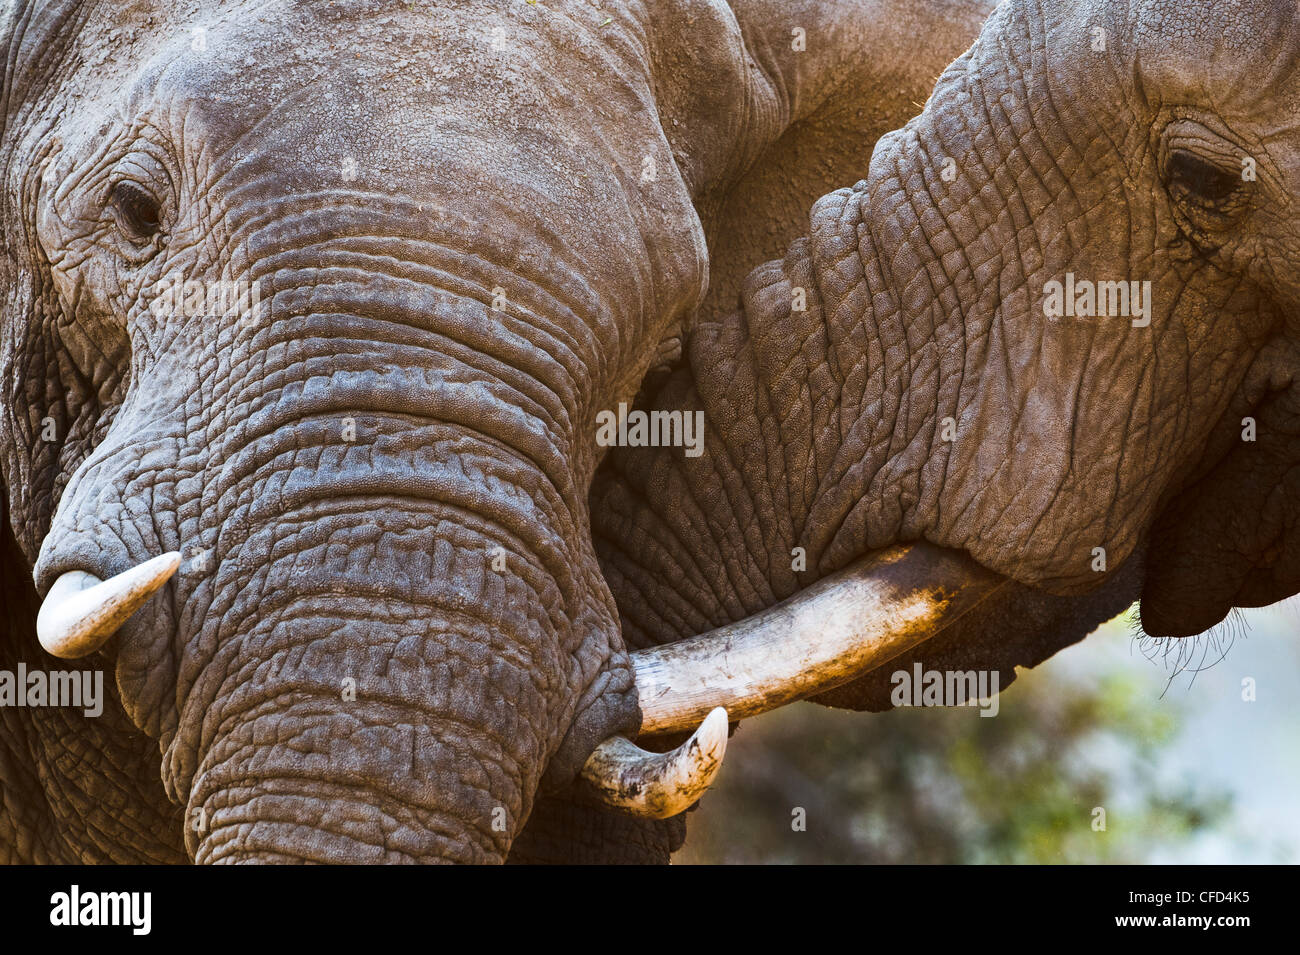 Bull adultes éléphants africains sparring. Berges de la Rivière Luangwa. South Luangwa National Park, Zambie Banque D'Images